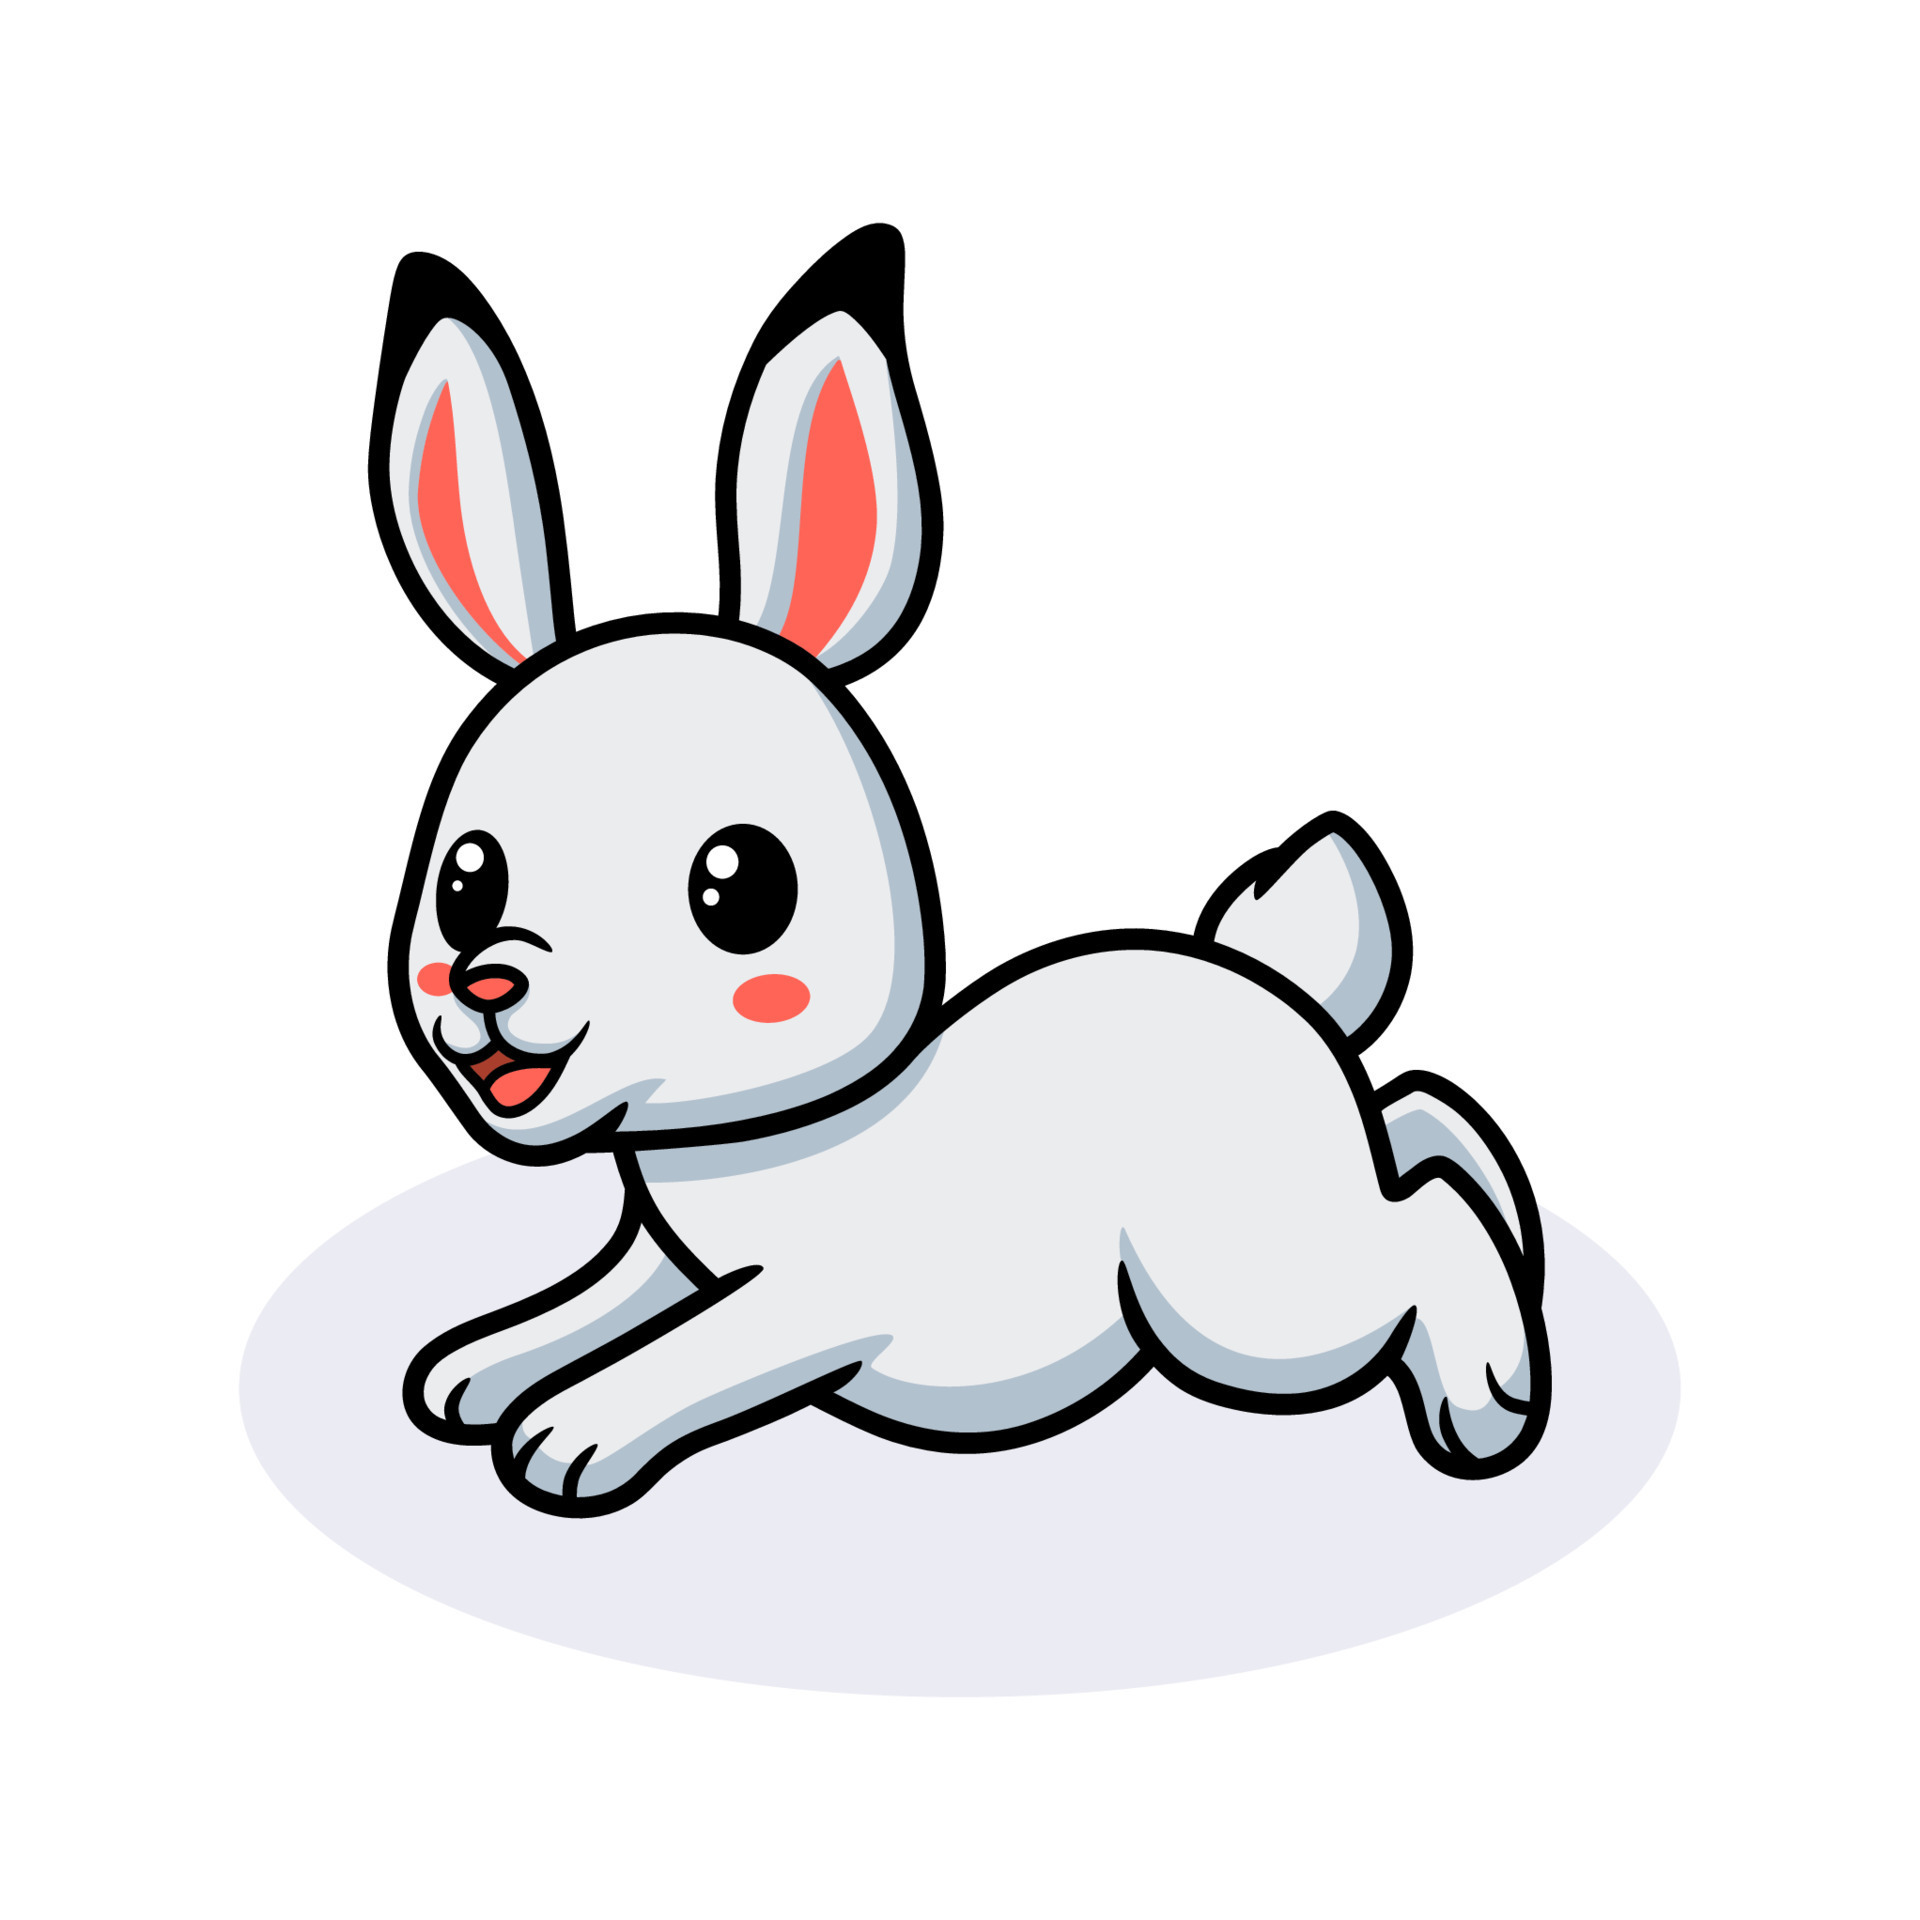 Cute little rabbit cartoon running 11719682 Vector Art at Vecteezy